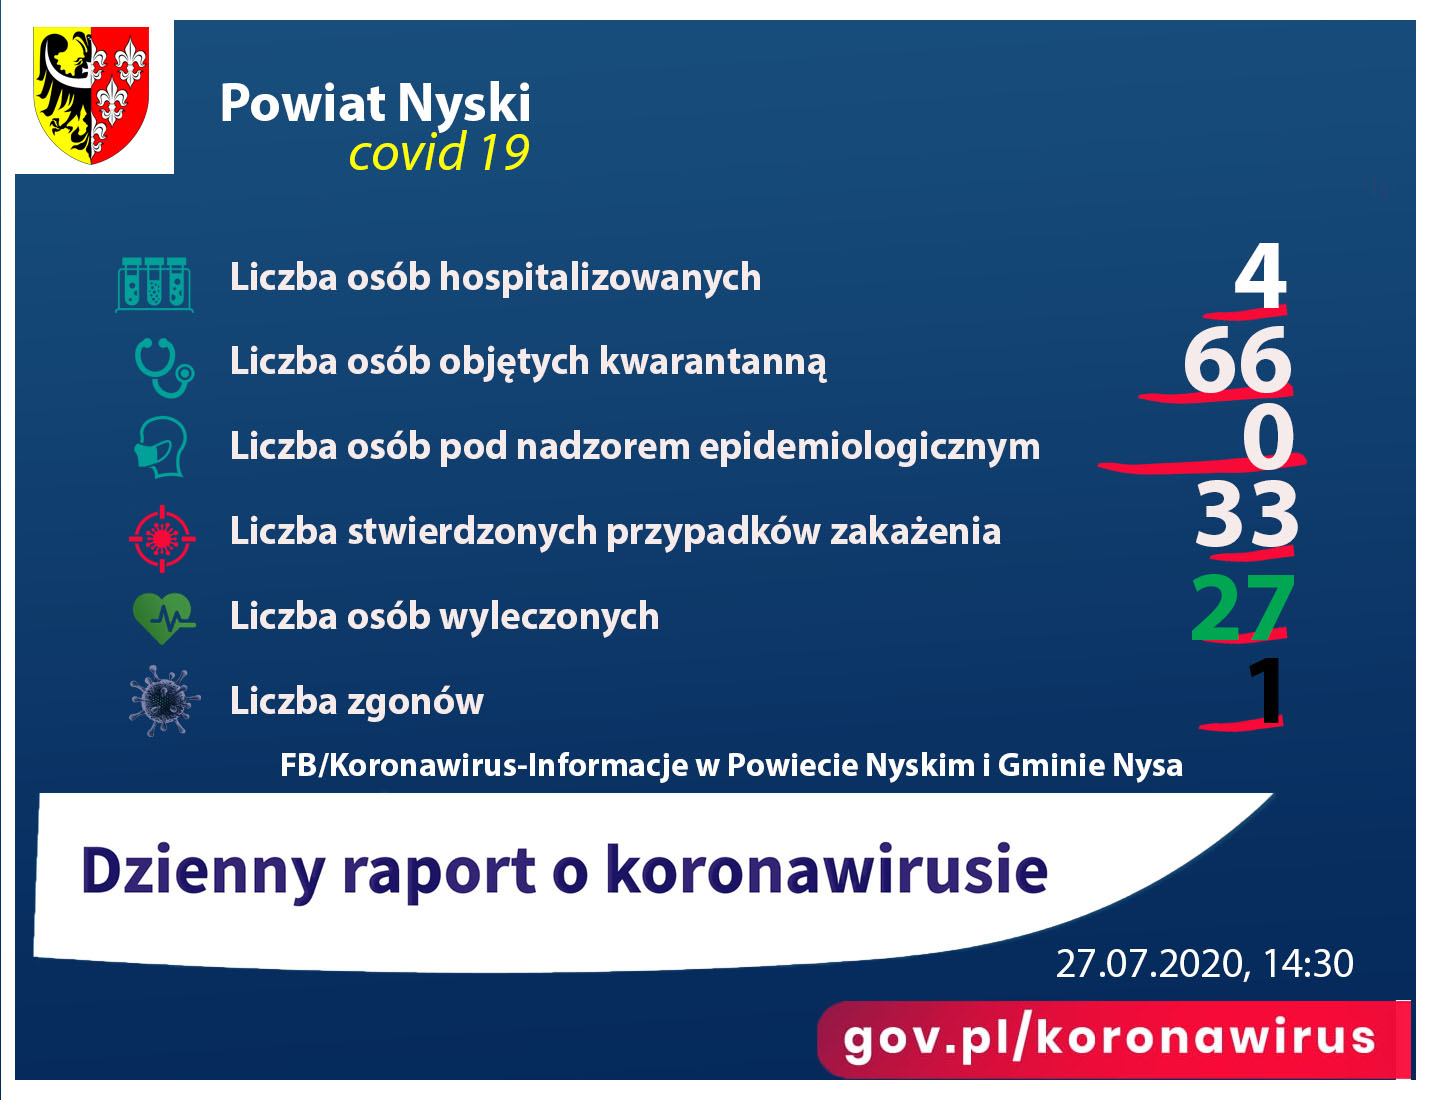 Zdjęcie przedstawia raport o ilości osób zakażonych koroawirusem